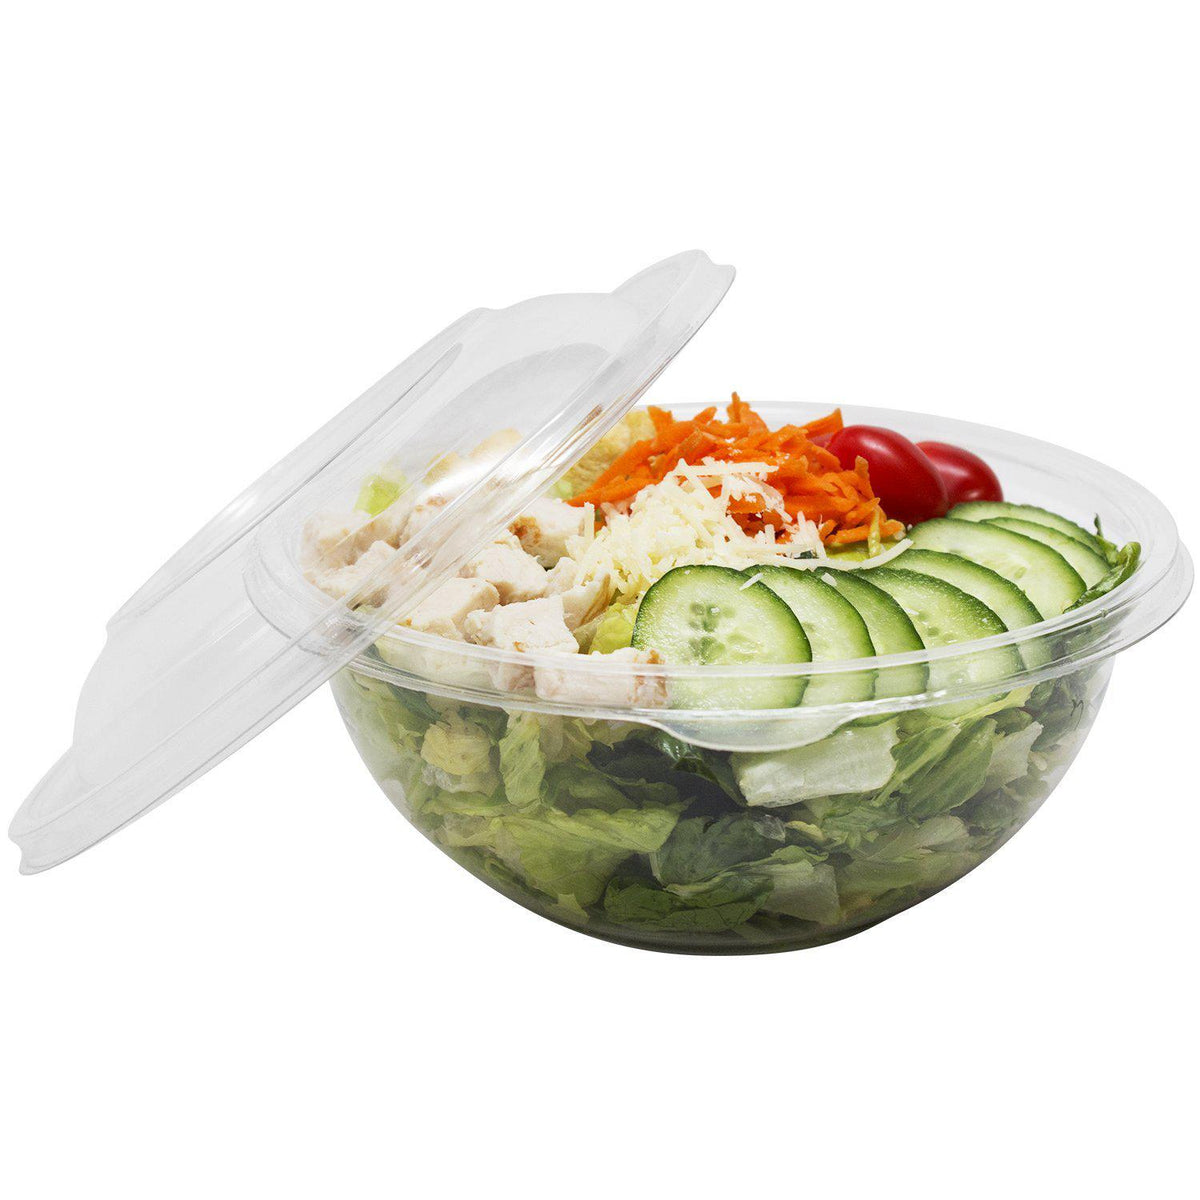 Karat 32 oz Pet Plastic Tamper Resistant Hinged Salad Bowl with Dome Lid - 240 Sets